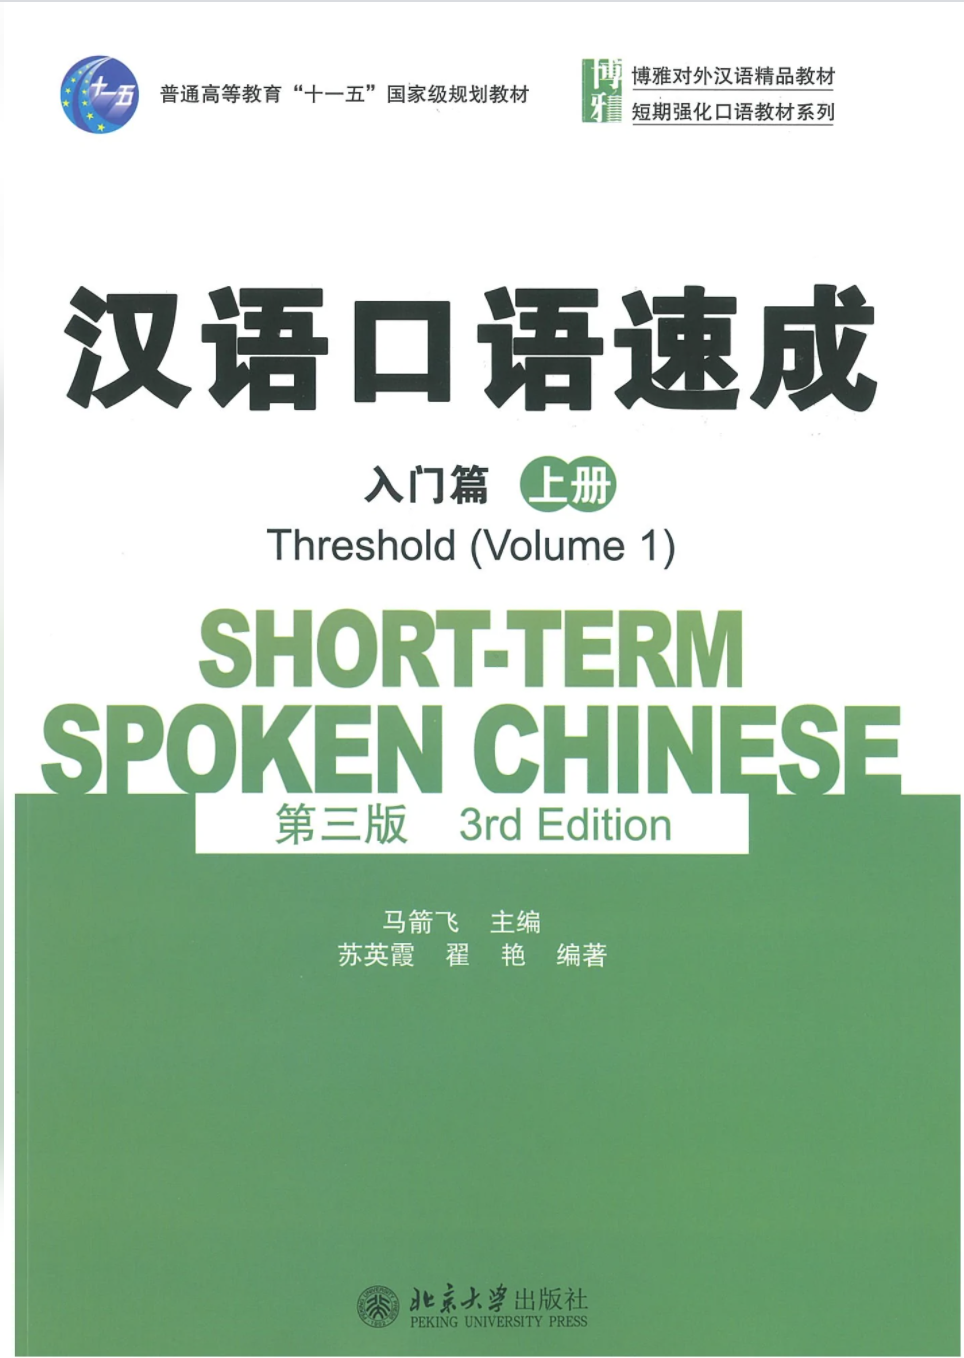 汉语口语速成 第三版 入门篇 上册 / Short-term Spoken Chinese /Thewshold（volume1） （3rd Edition）